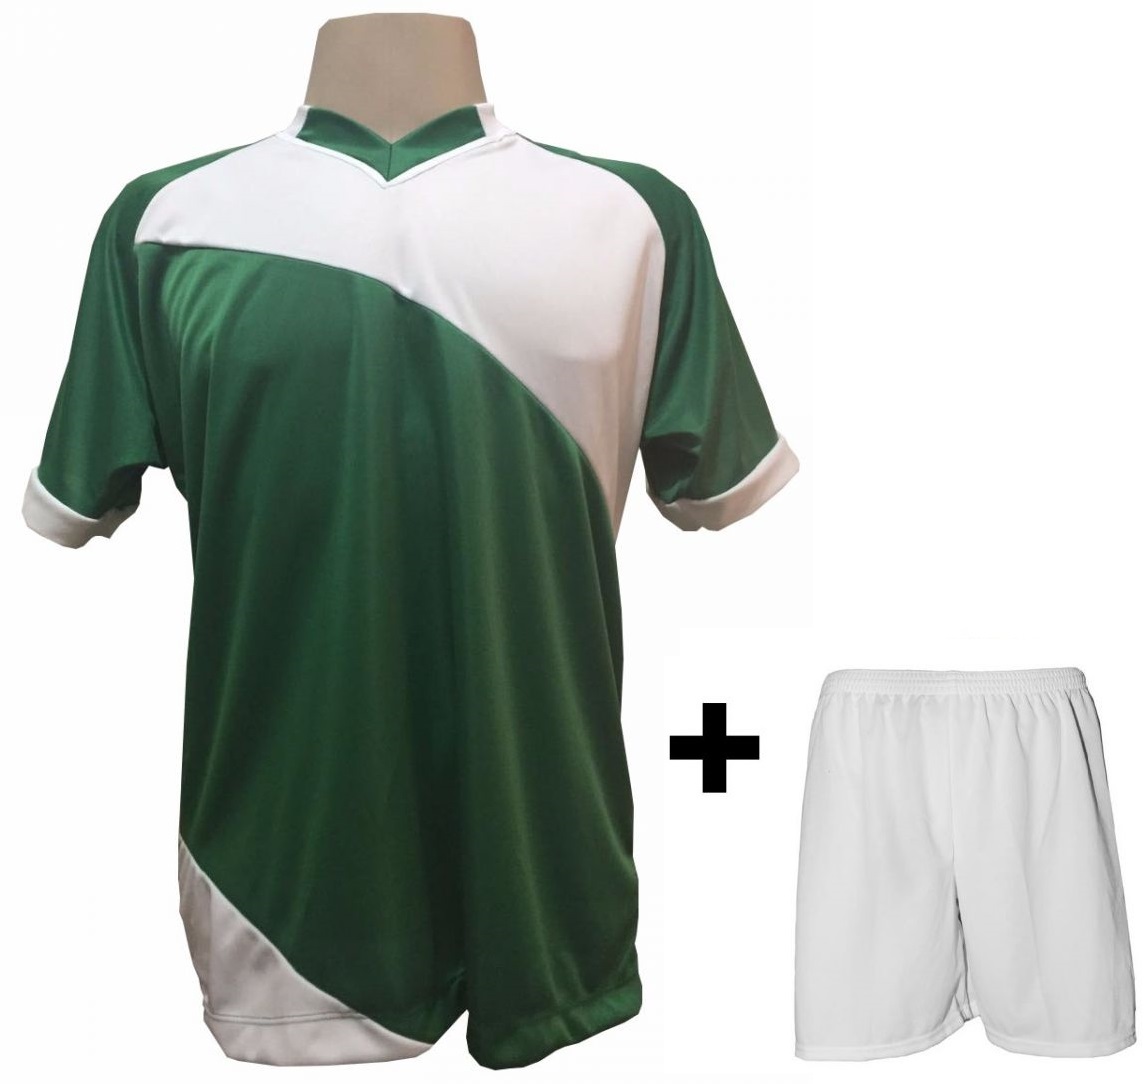 Uniforme Esportivo com 20 camisas modelo Bélgica Verde/Branco + 20 calções modelo Madrid Branco + Brindes